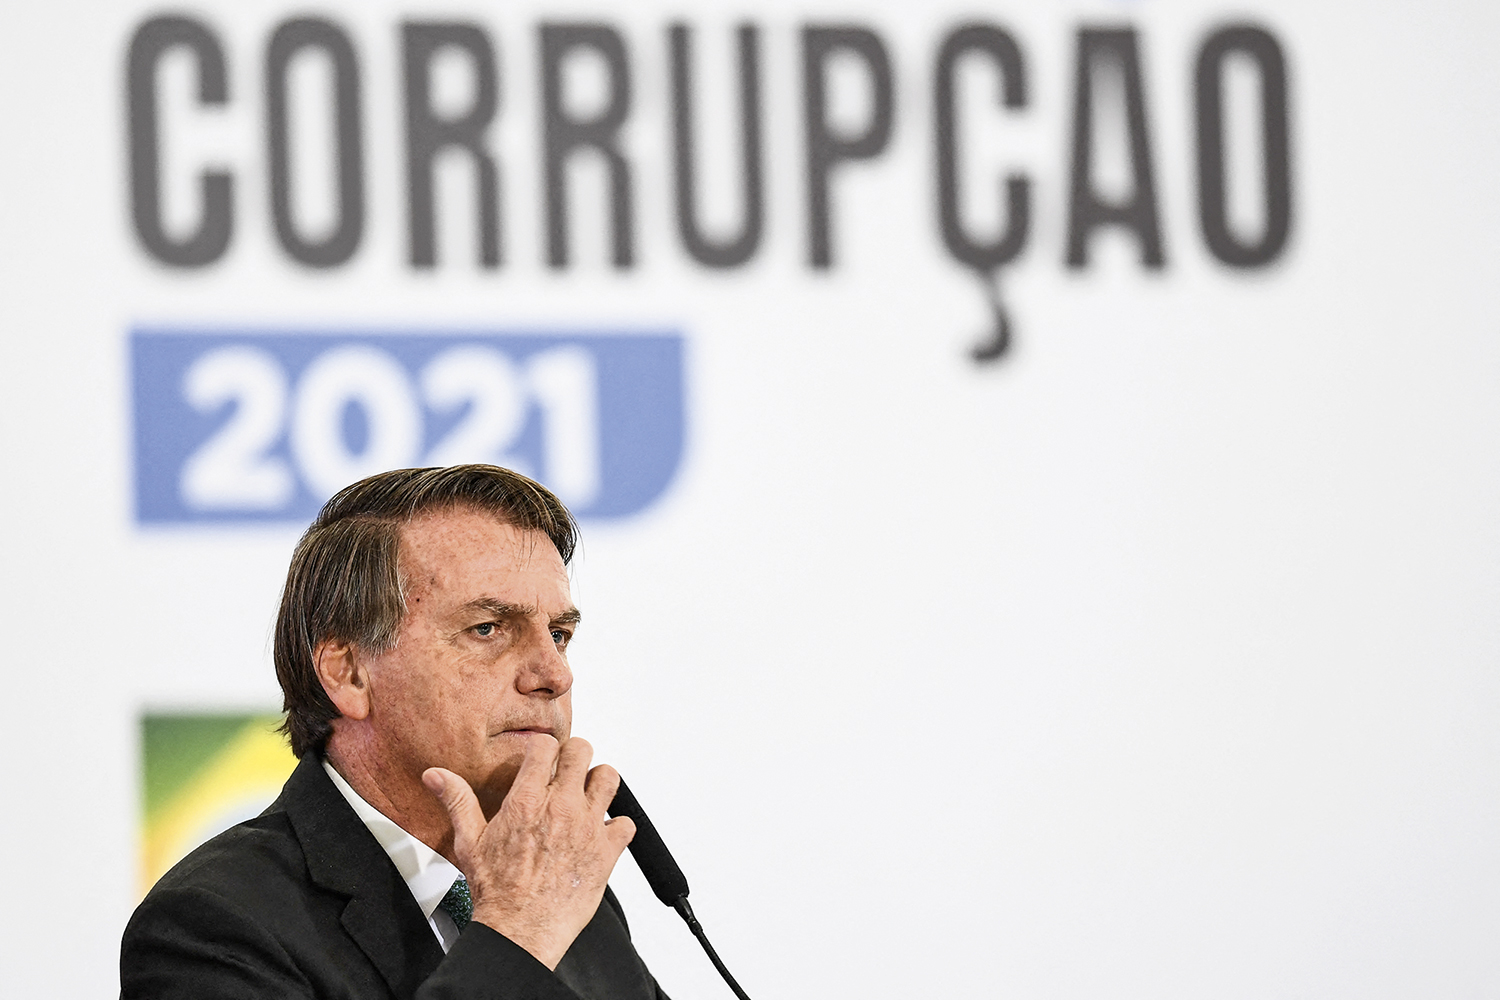 ALVO - Jair Bolsonaro: mentiroso, enganador, irracional, inconfiável e, no momento, o adversário número 1 -